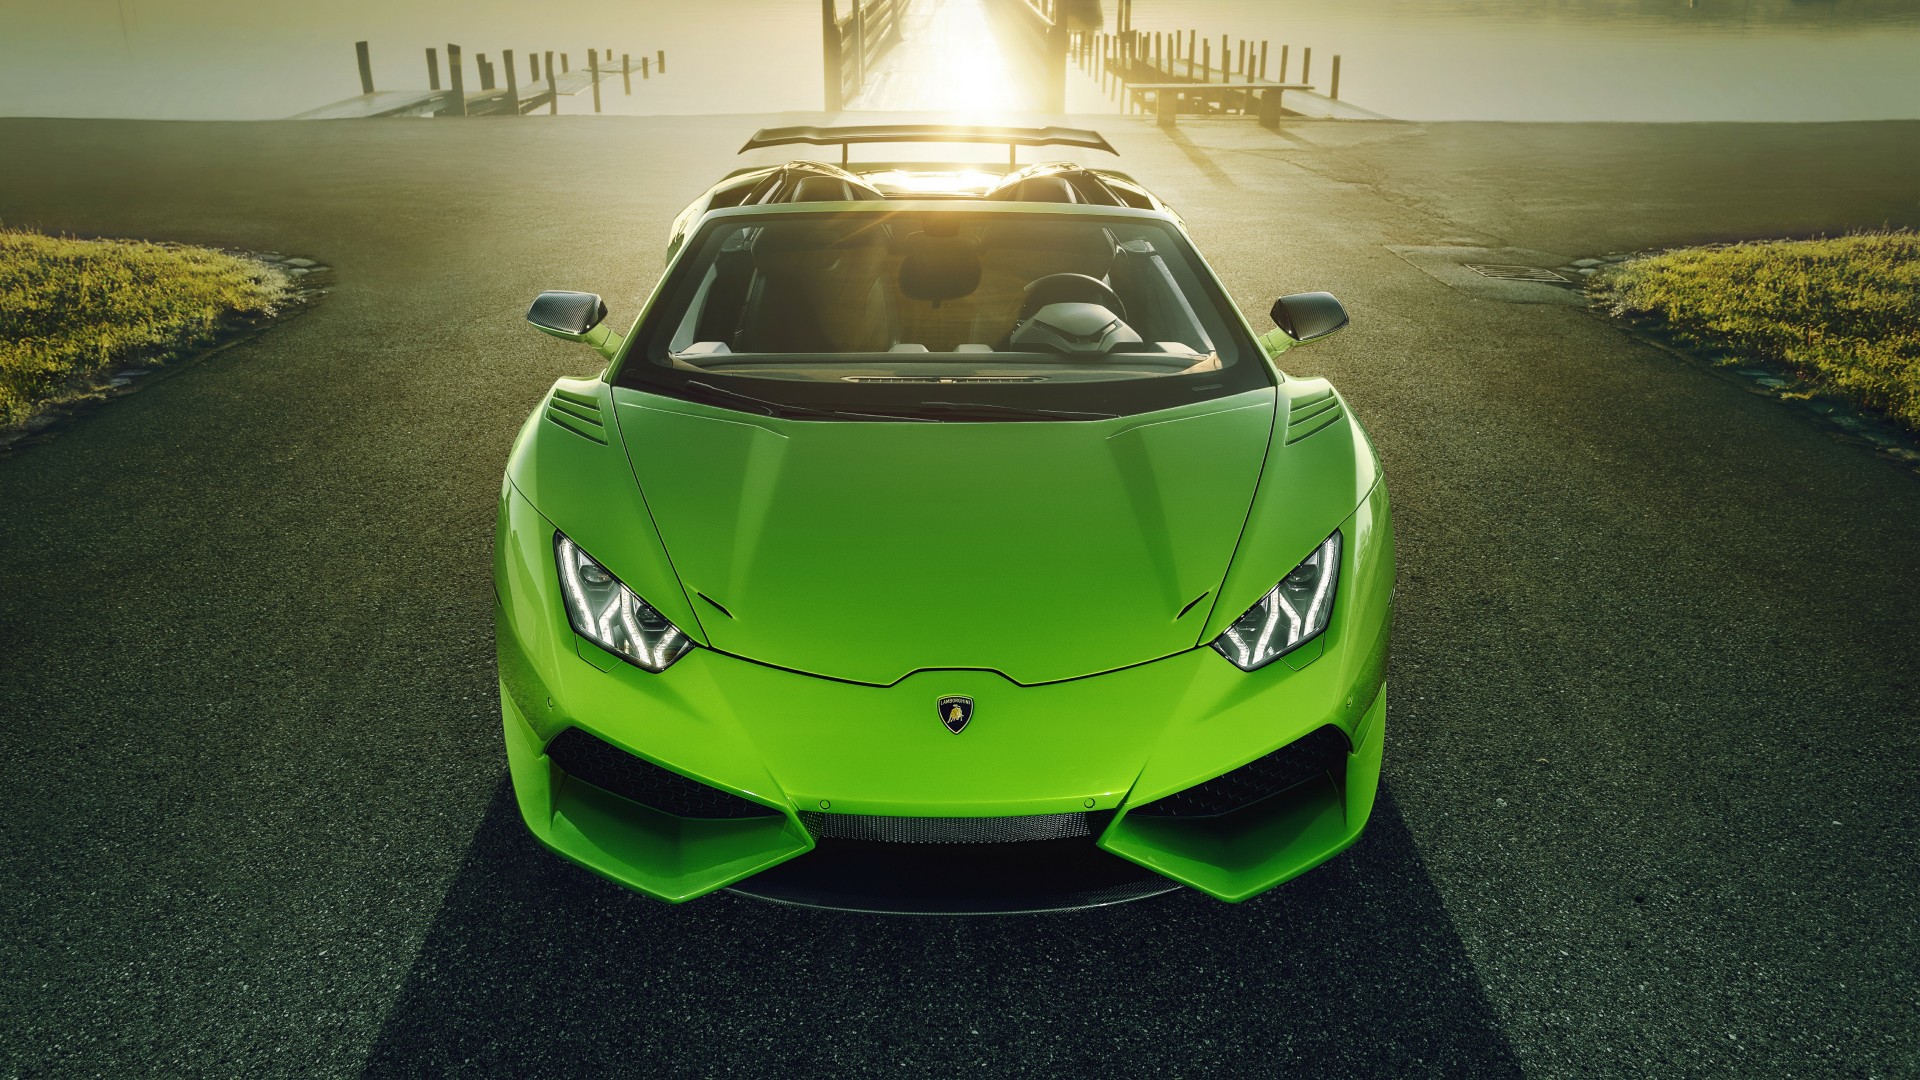 Hình nền máy tính Lamborghini sẽ khiến bạn cảm thấy như đang ngồi sau vô-lăng của một chiếc siêu xe đẳng cấp thế giới. Với hình ảnh đầy sức hút và phong cách đầy lôi cuốn, đây chắc chắn sẽ là lựa chọn hoàn hảo cho các tín đồ yêu thích thể loại siêu xe.